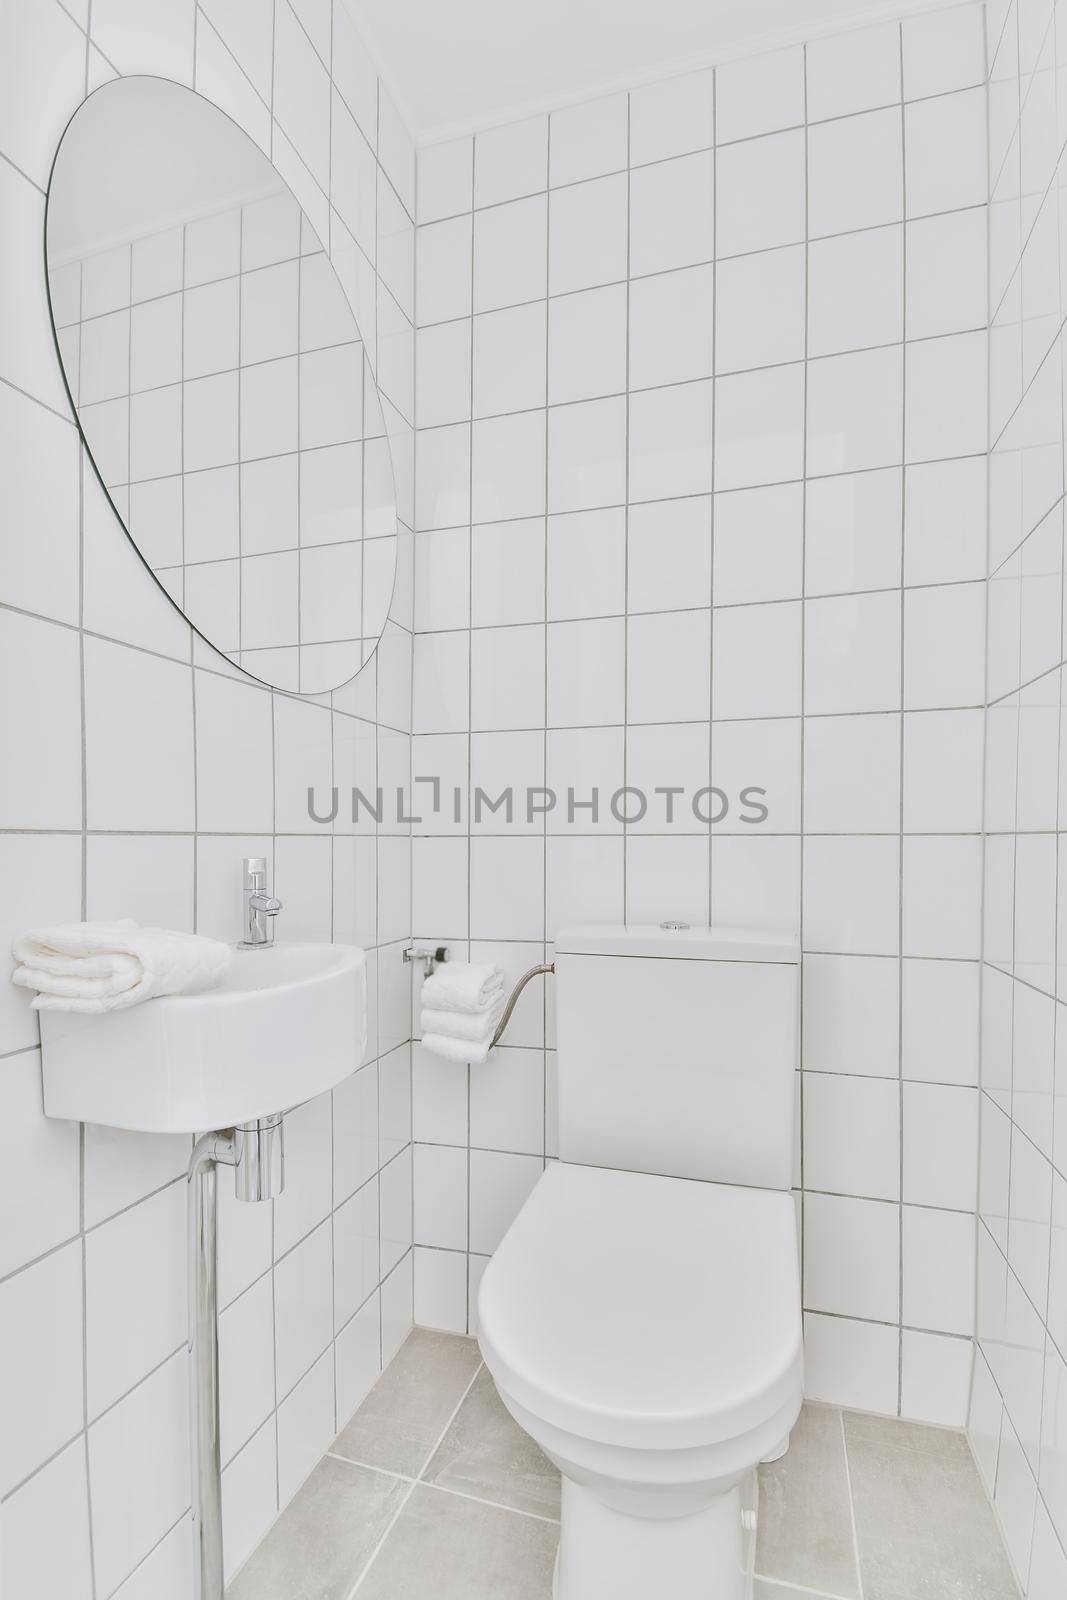 Attractive restroom interior by casamedia